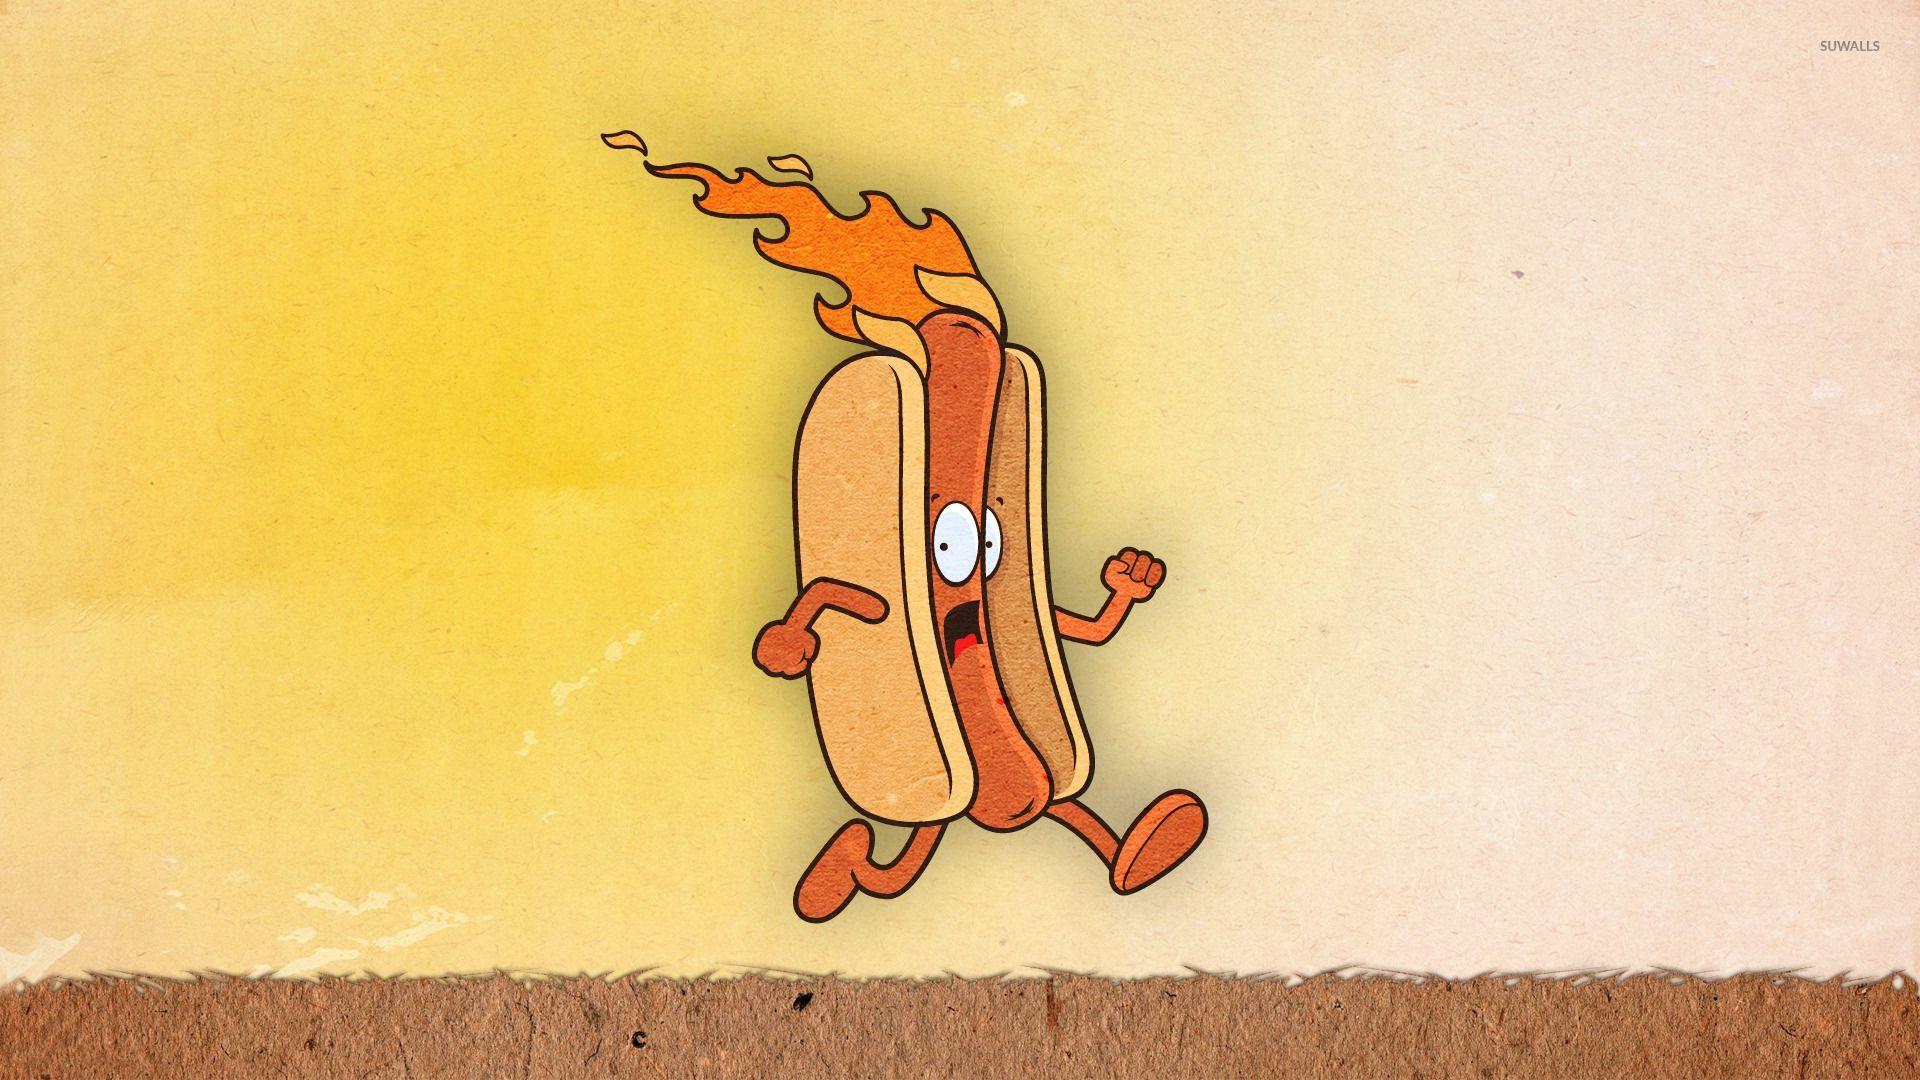 Hot dog on fire wallpaper wallpaper